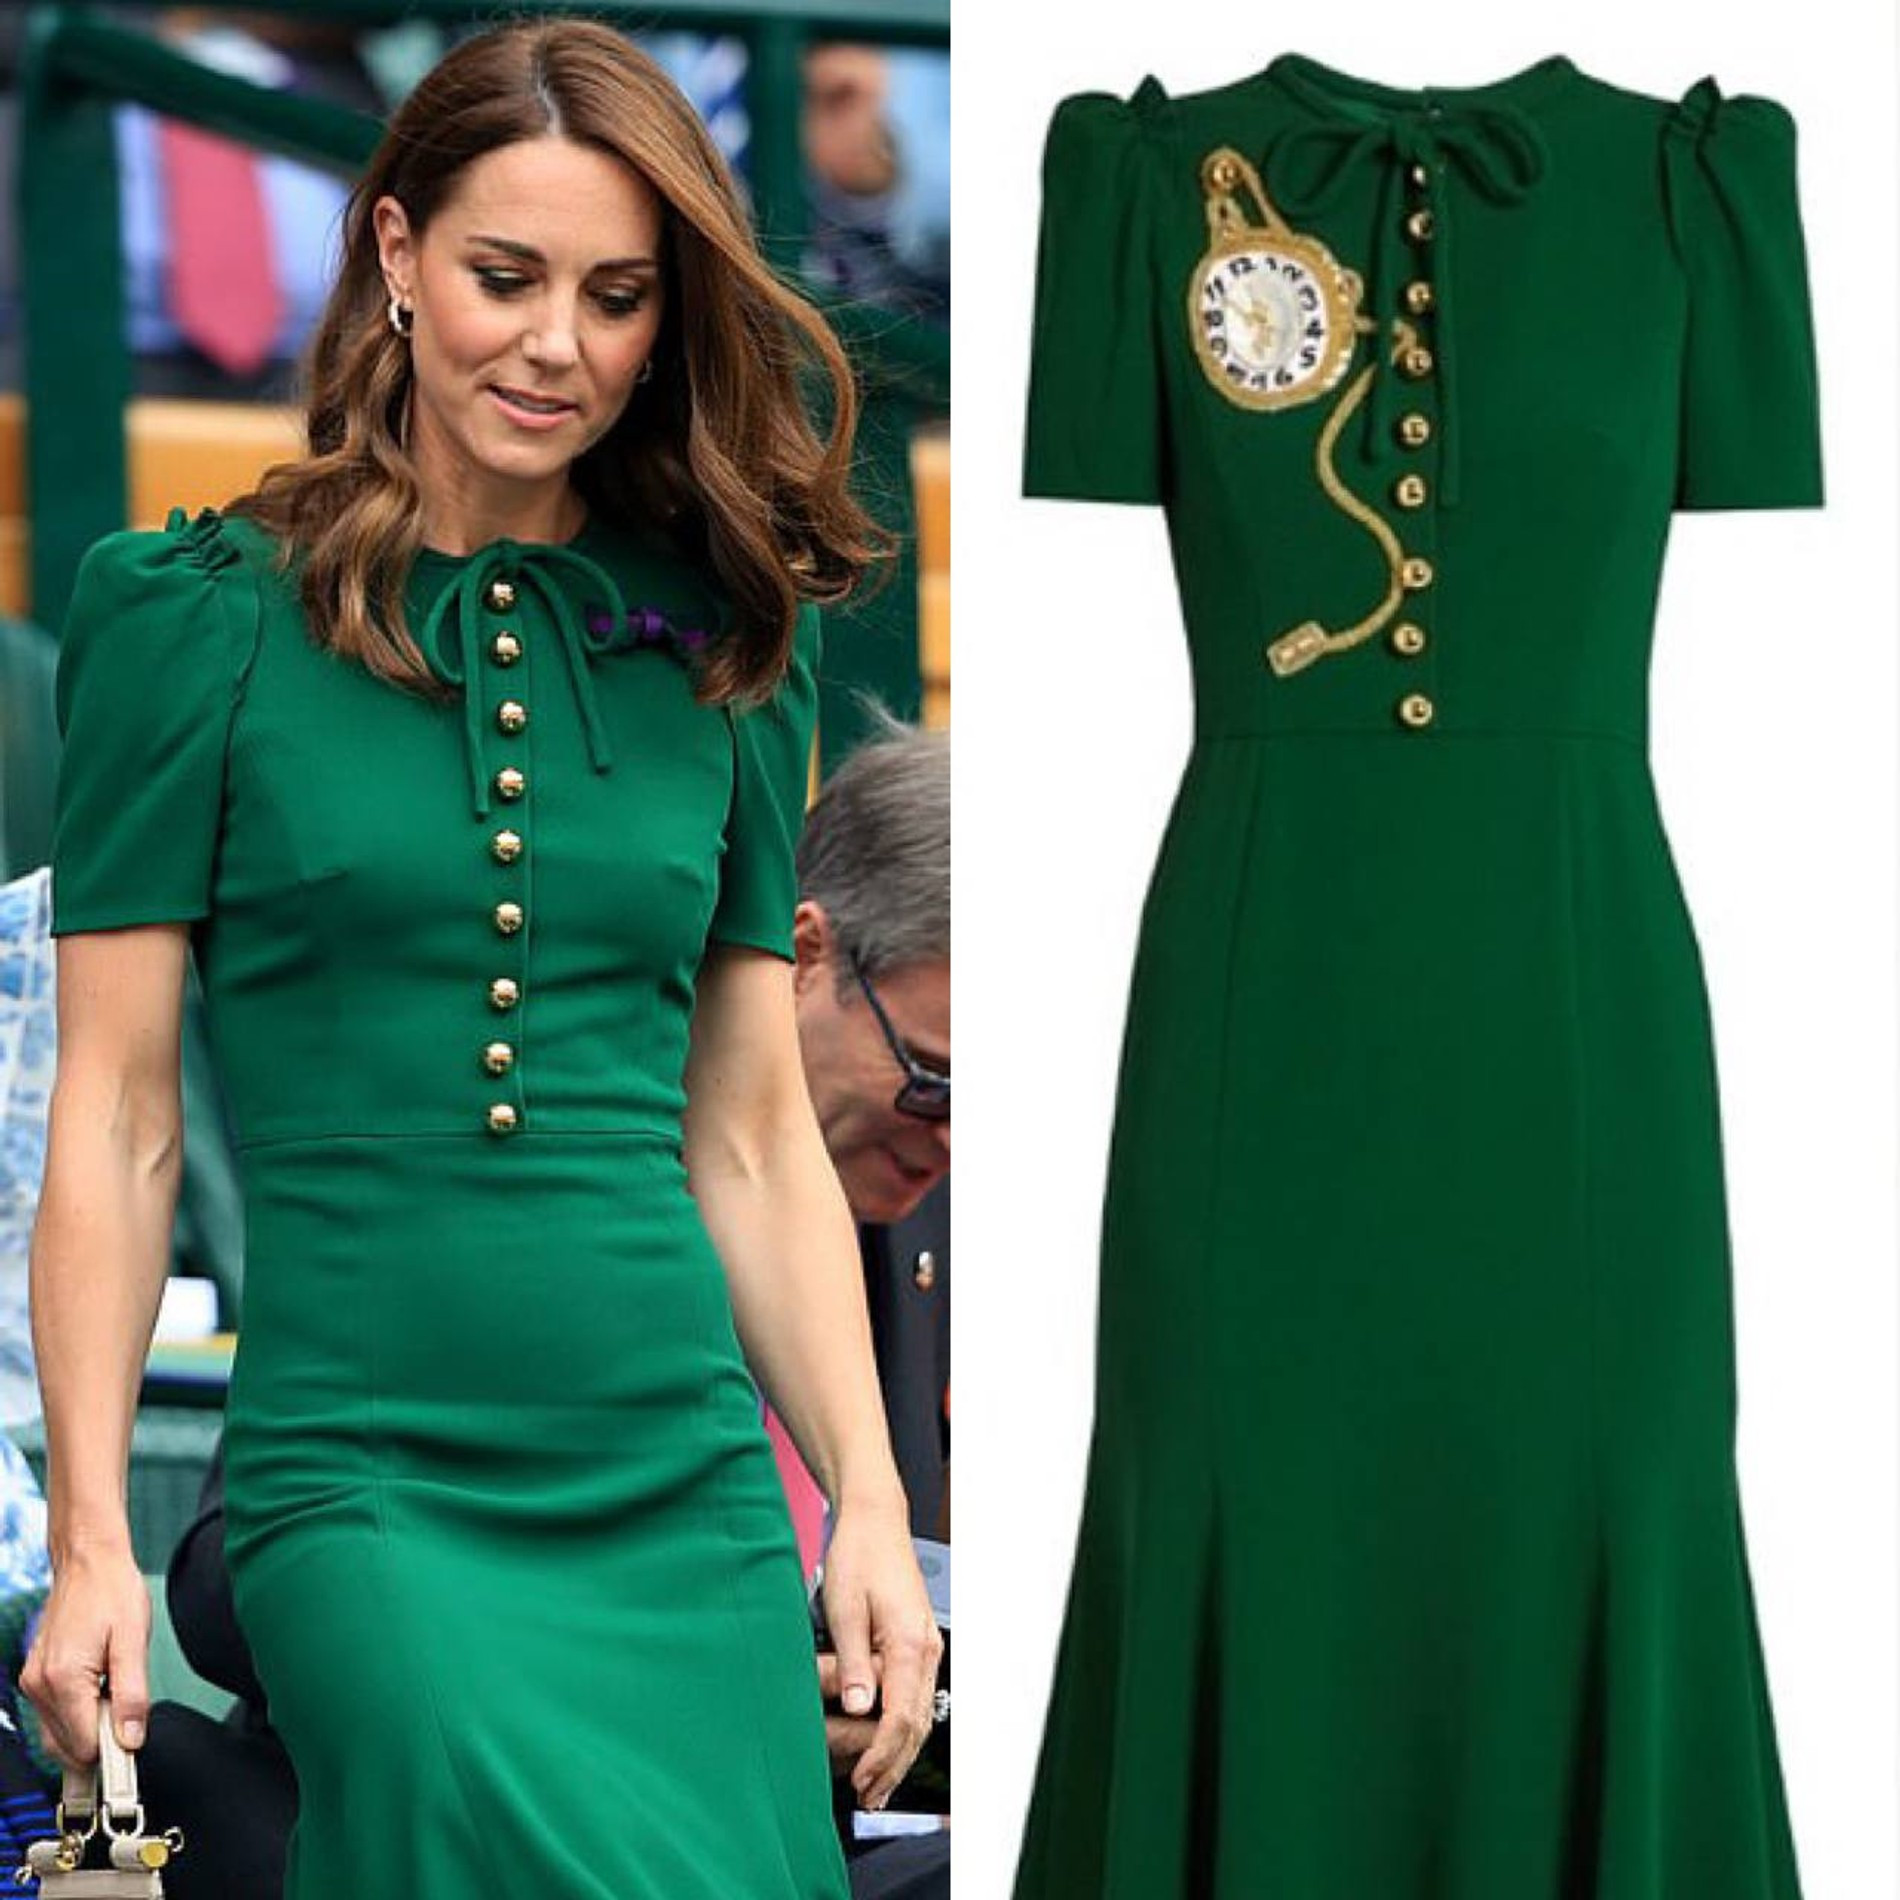 На Уимблдонском турнире в 2019 году Кейт появилась в платье Dolce & Gabbana, но без вызывающей «часовой» аппликации оригинала
Коллаж Super